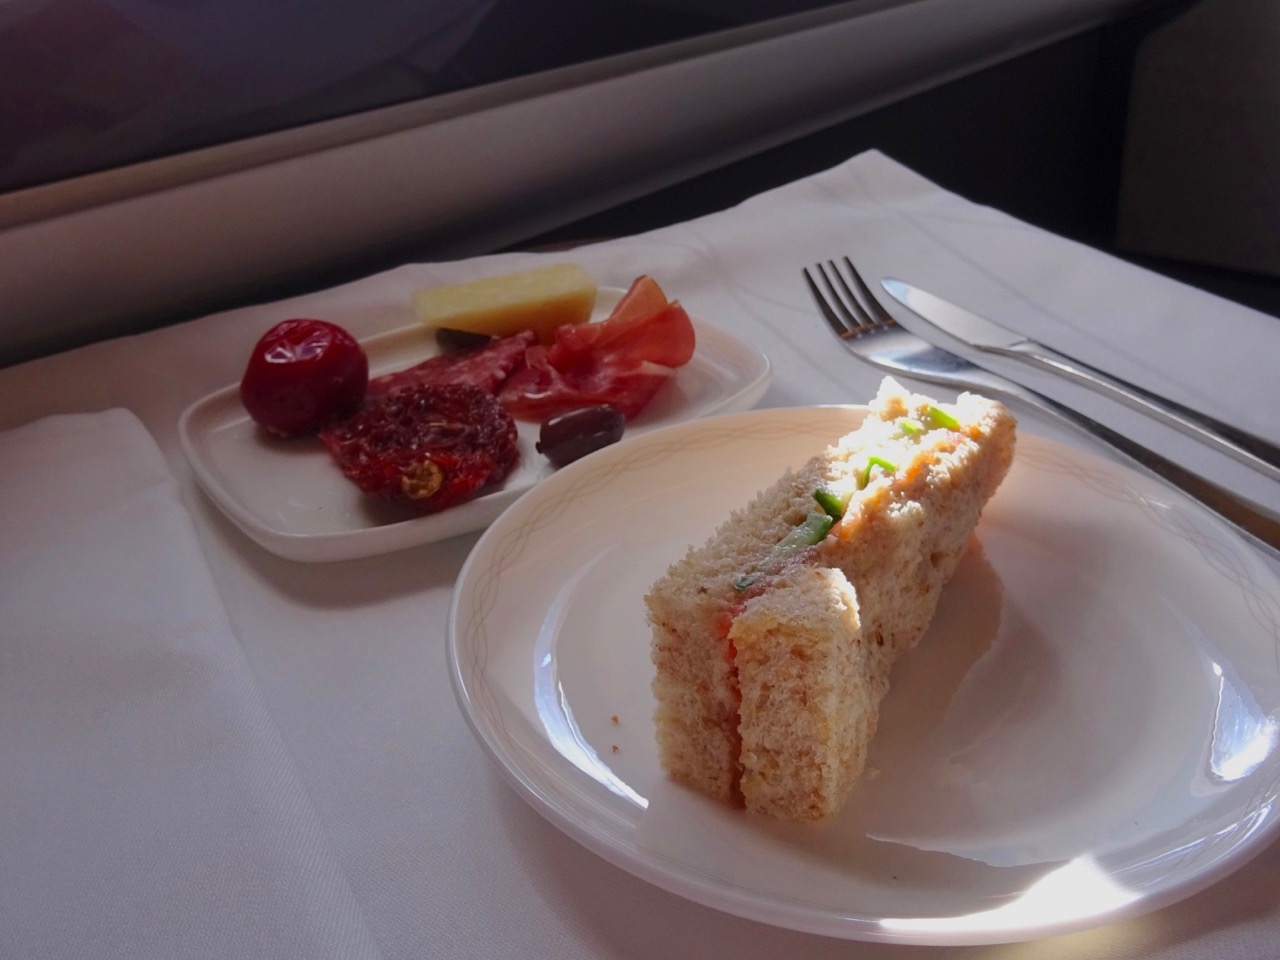 British Airways 777 First Class food